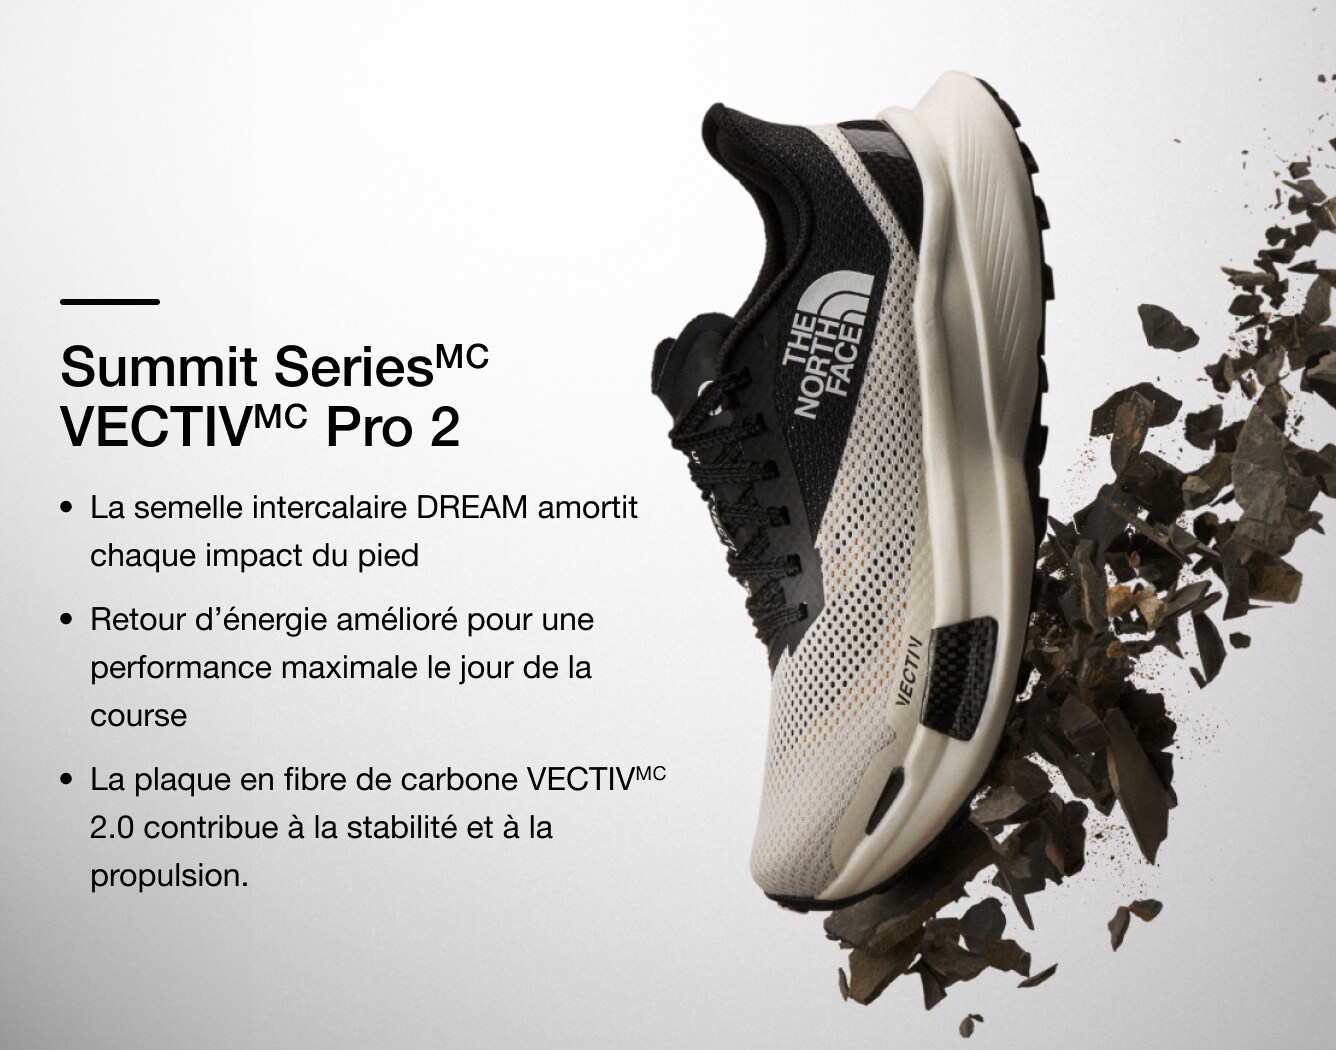 Photo studio d’une chaussure VECTIV Pro de la série Summit, dont les caractéristiques sont illustrées par un texte superposé.